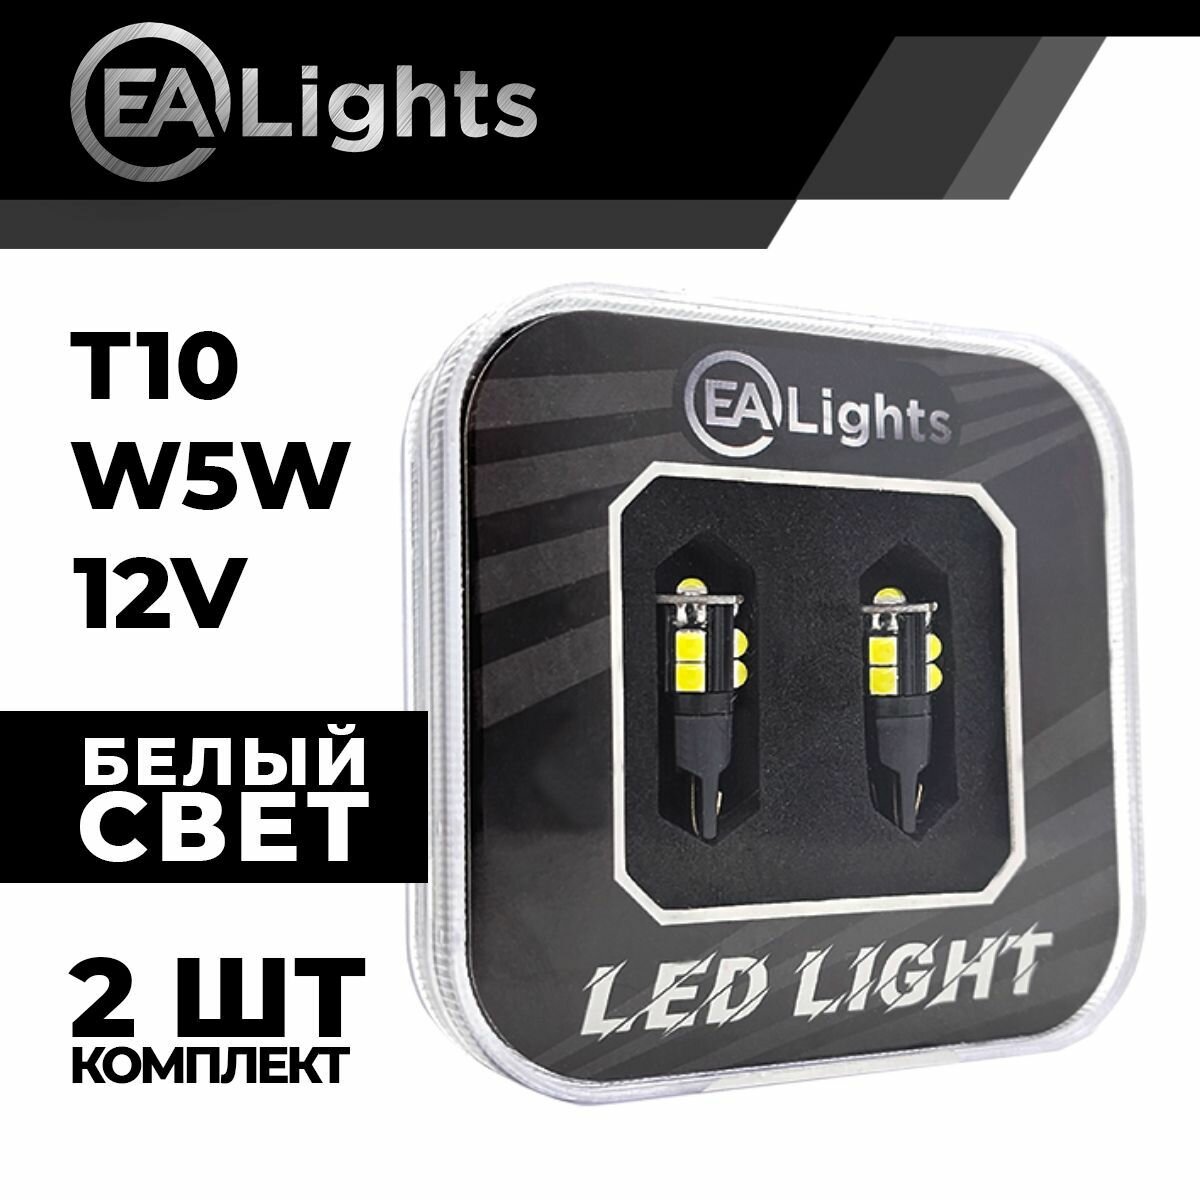 Автомобильная светодиодная LED лампа T10 W5W (чип 3030-10) для подсветки салона, багажника, номерного знака, 12в белый свет, 2 шт